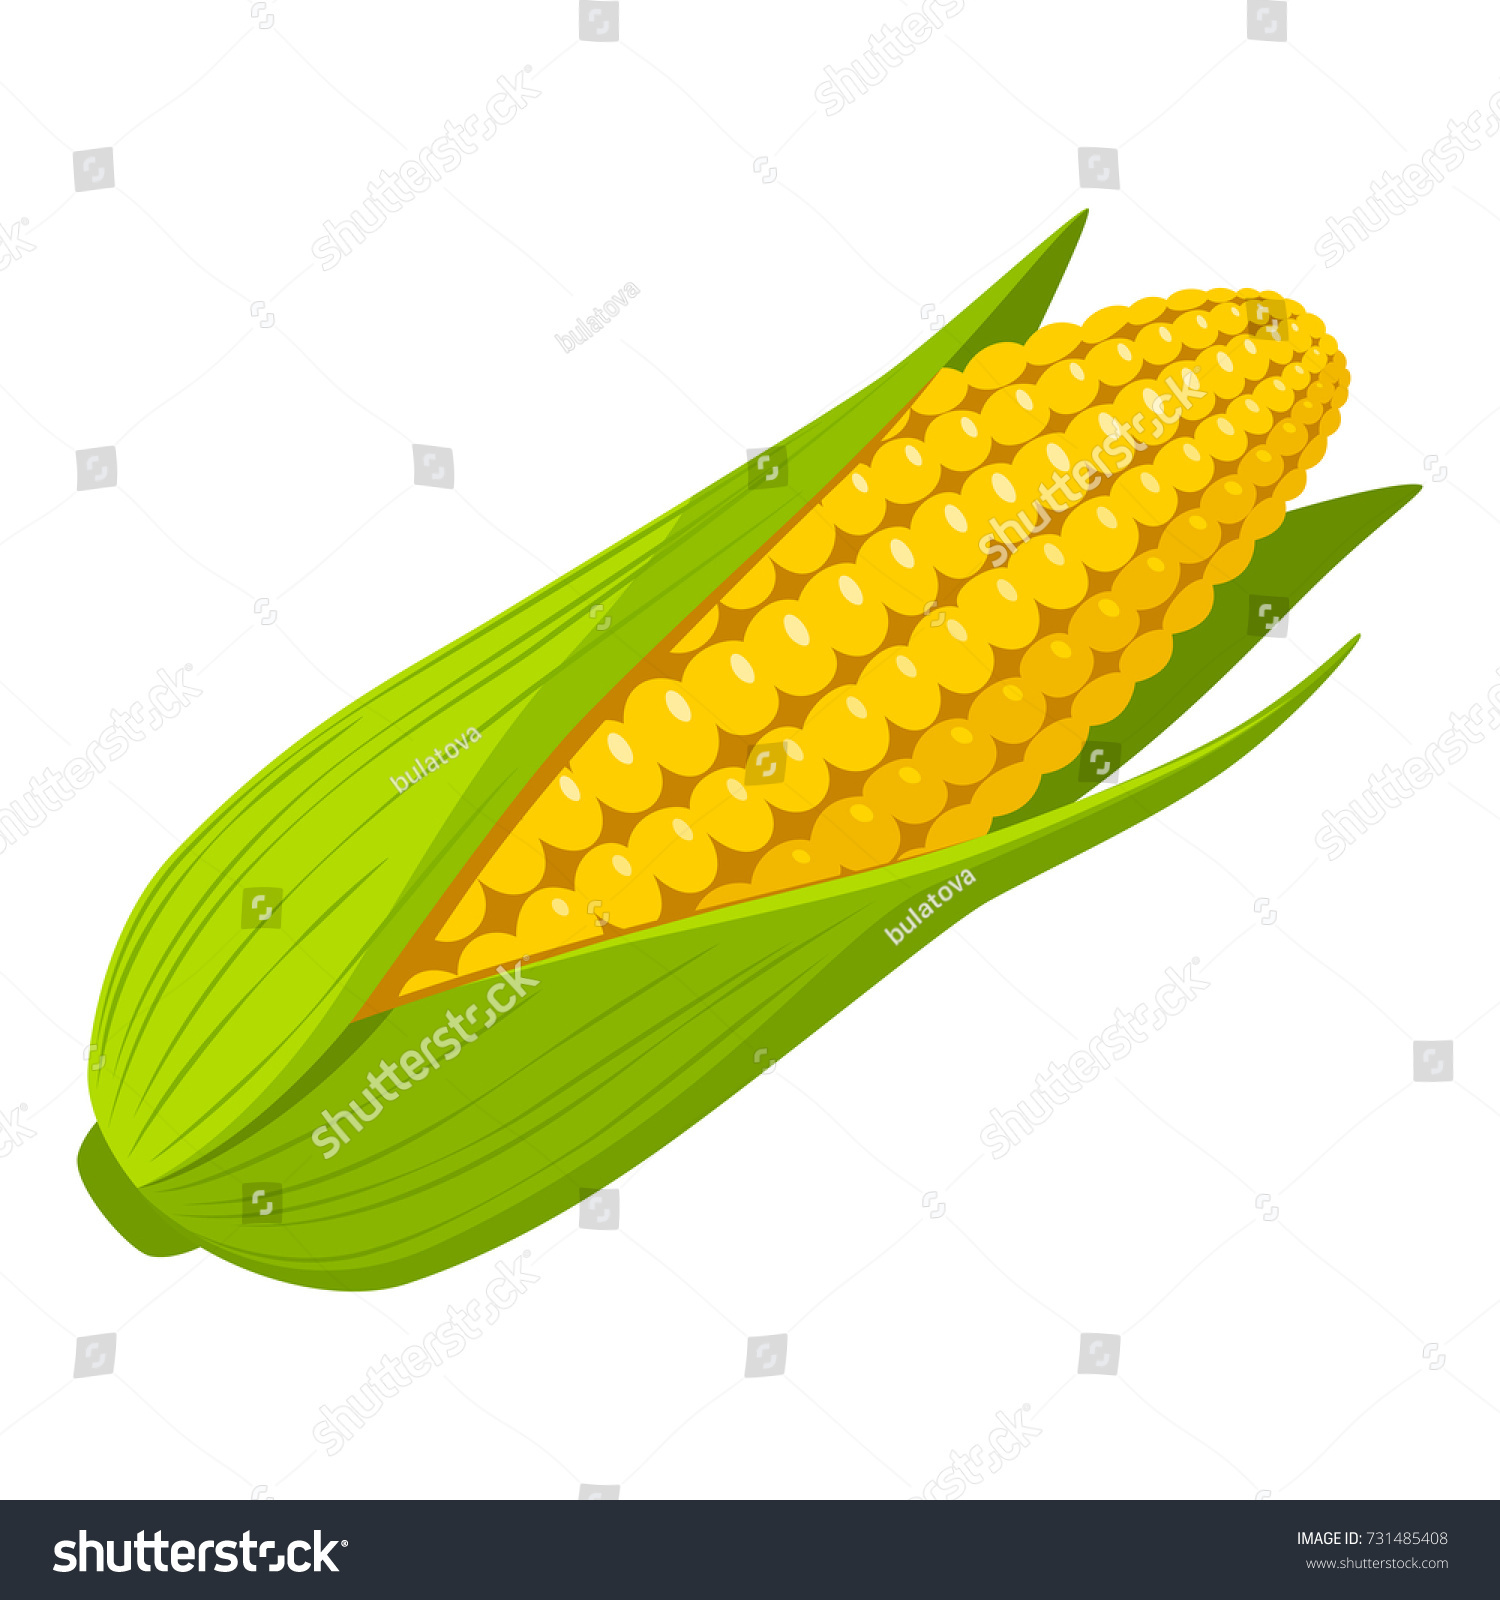 Corn #731485408